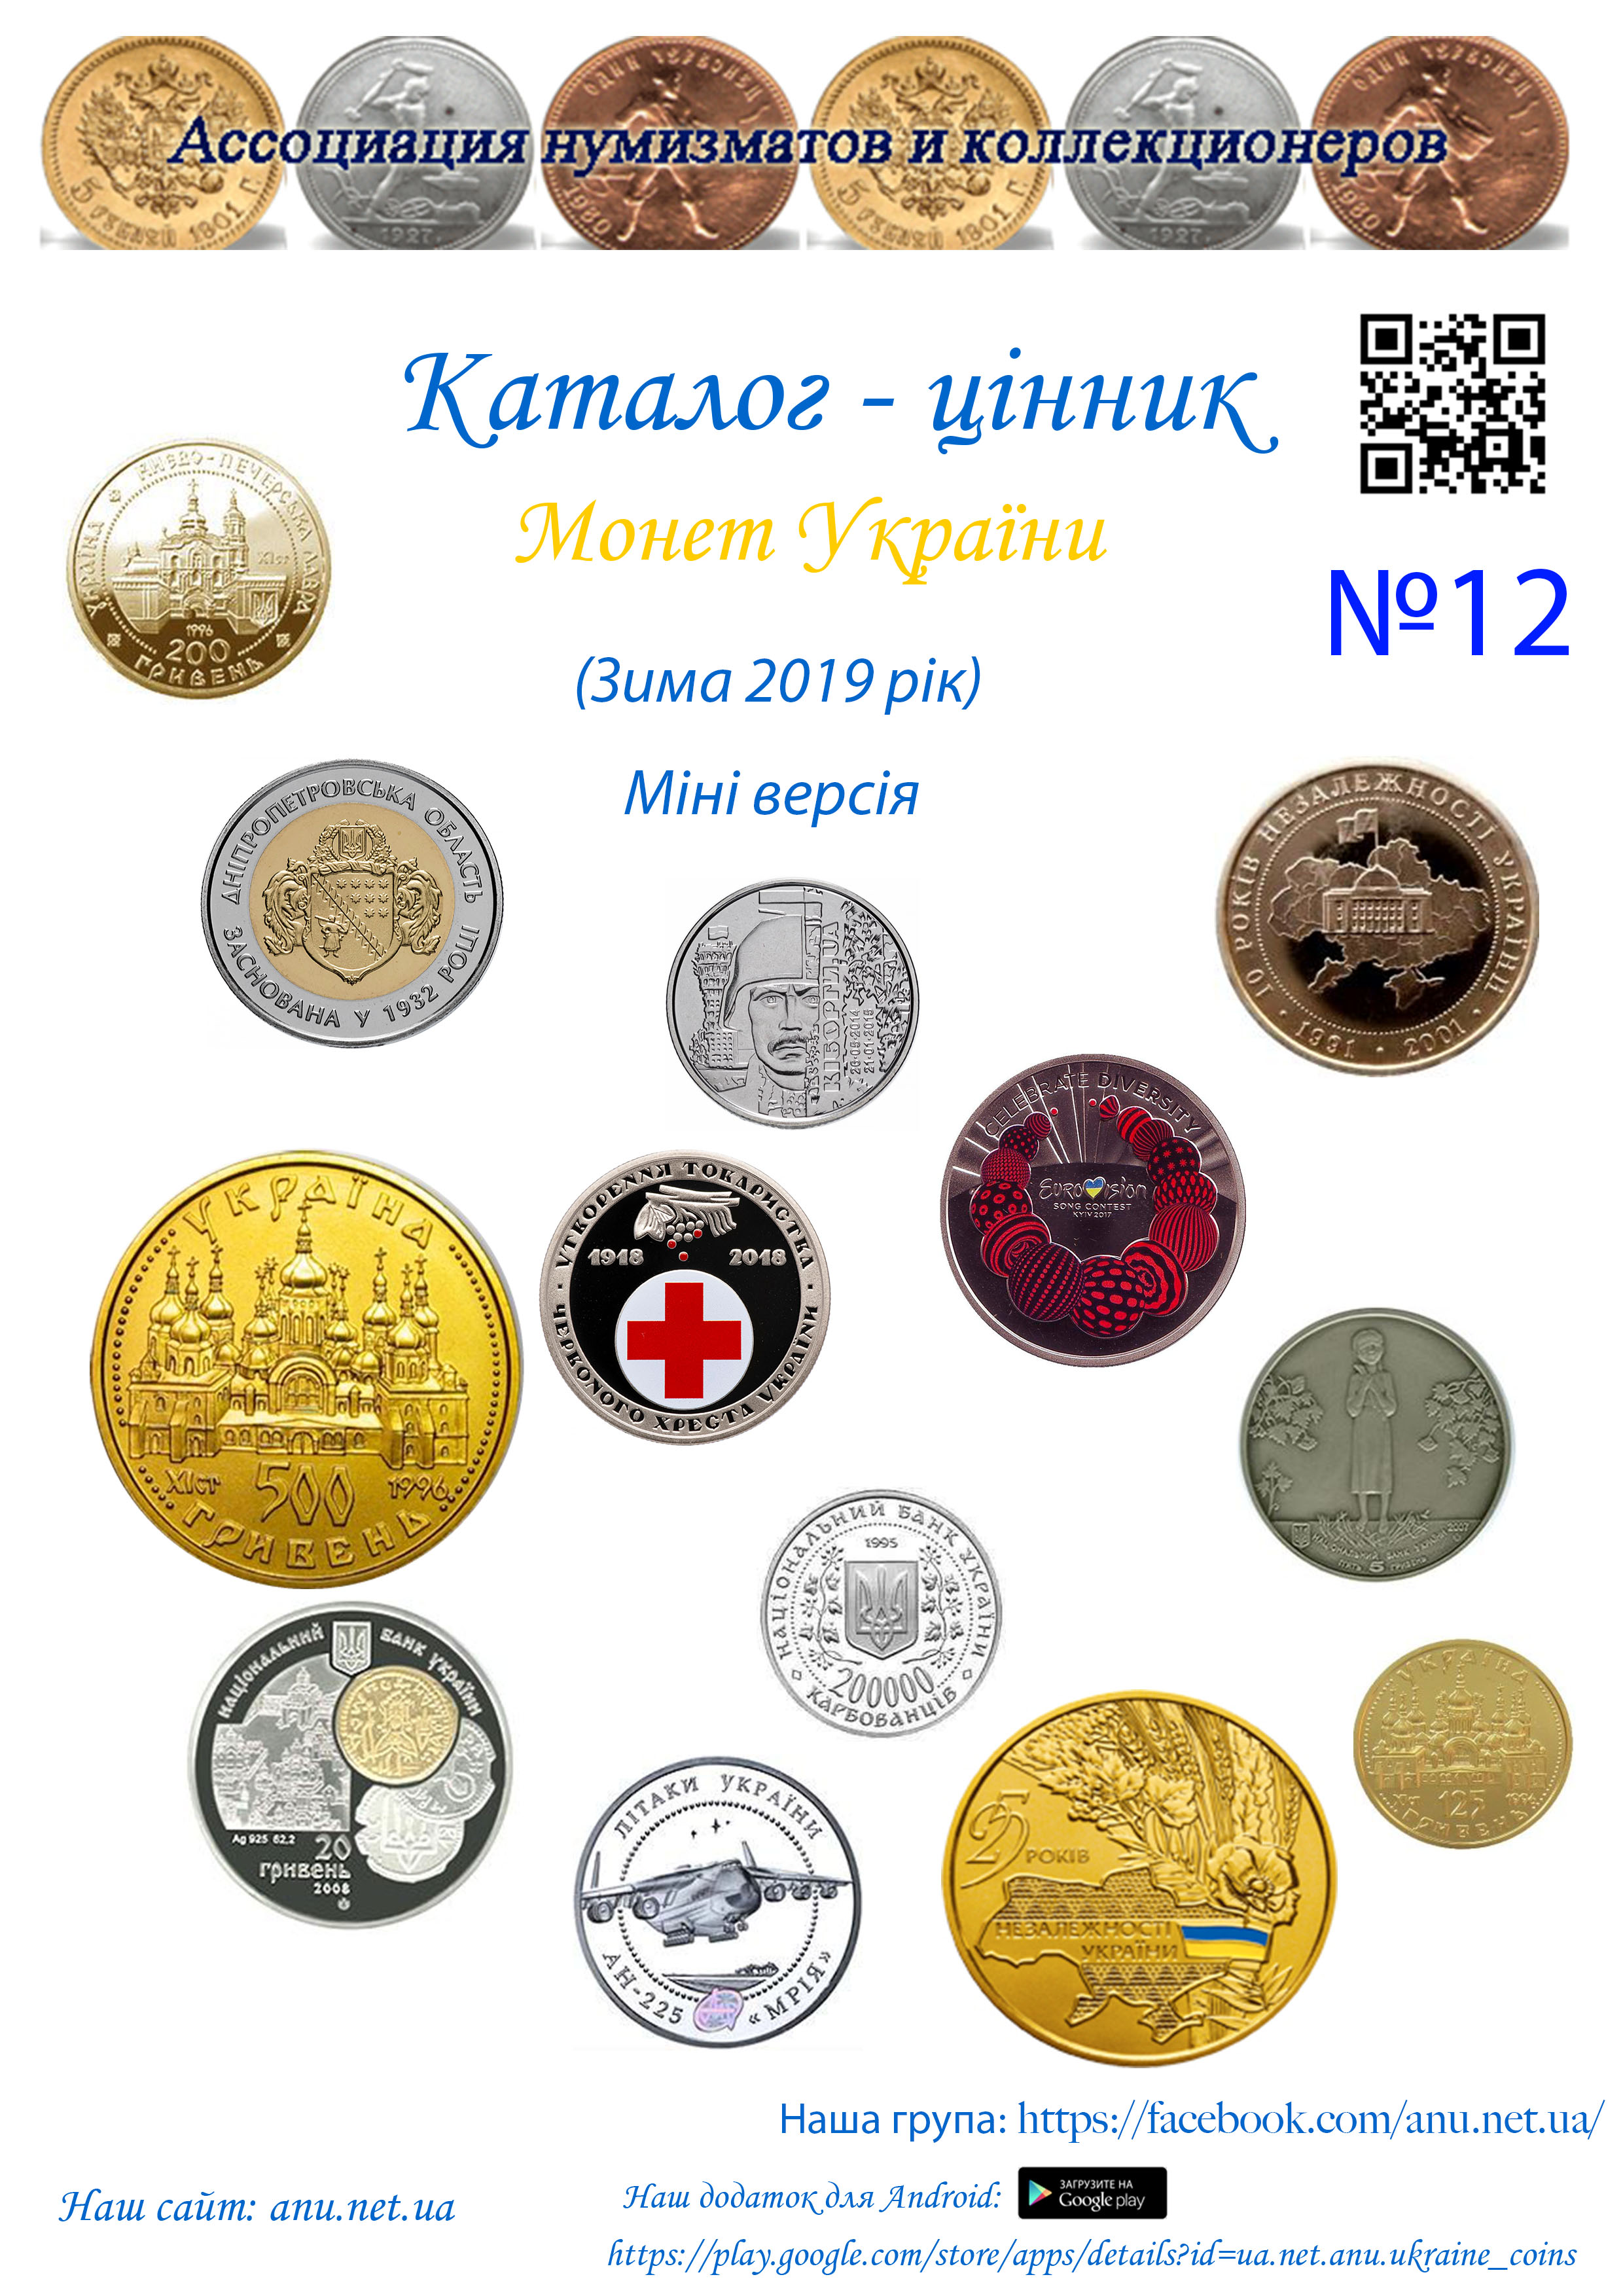 Version_12 Асоціація нумізматів та колекціонерів України